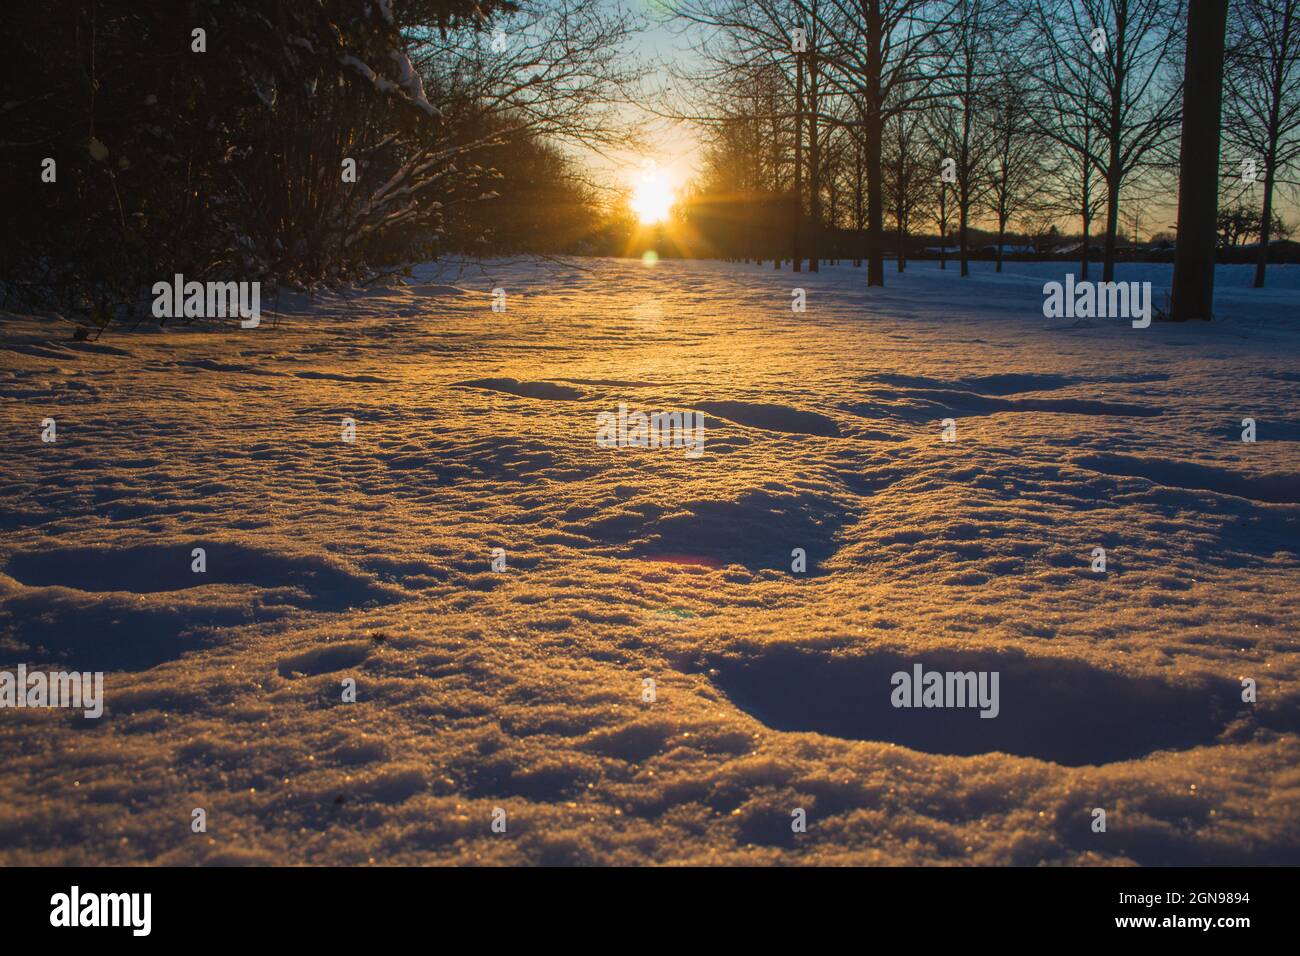 Paesaggio invernale a Braunschweig, bassa Sassonia, Germania. Parco cittadino coperto di neve durante il tramonto in una bella giornata invernale soleggiata Foto Stock